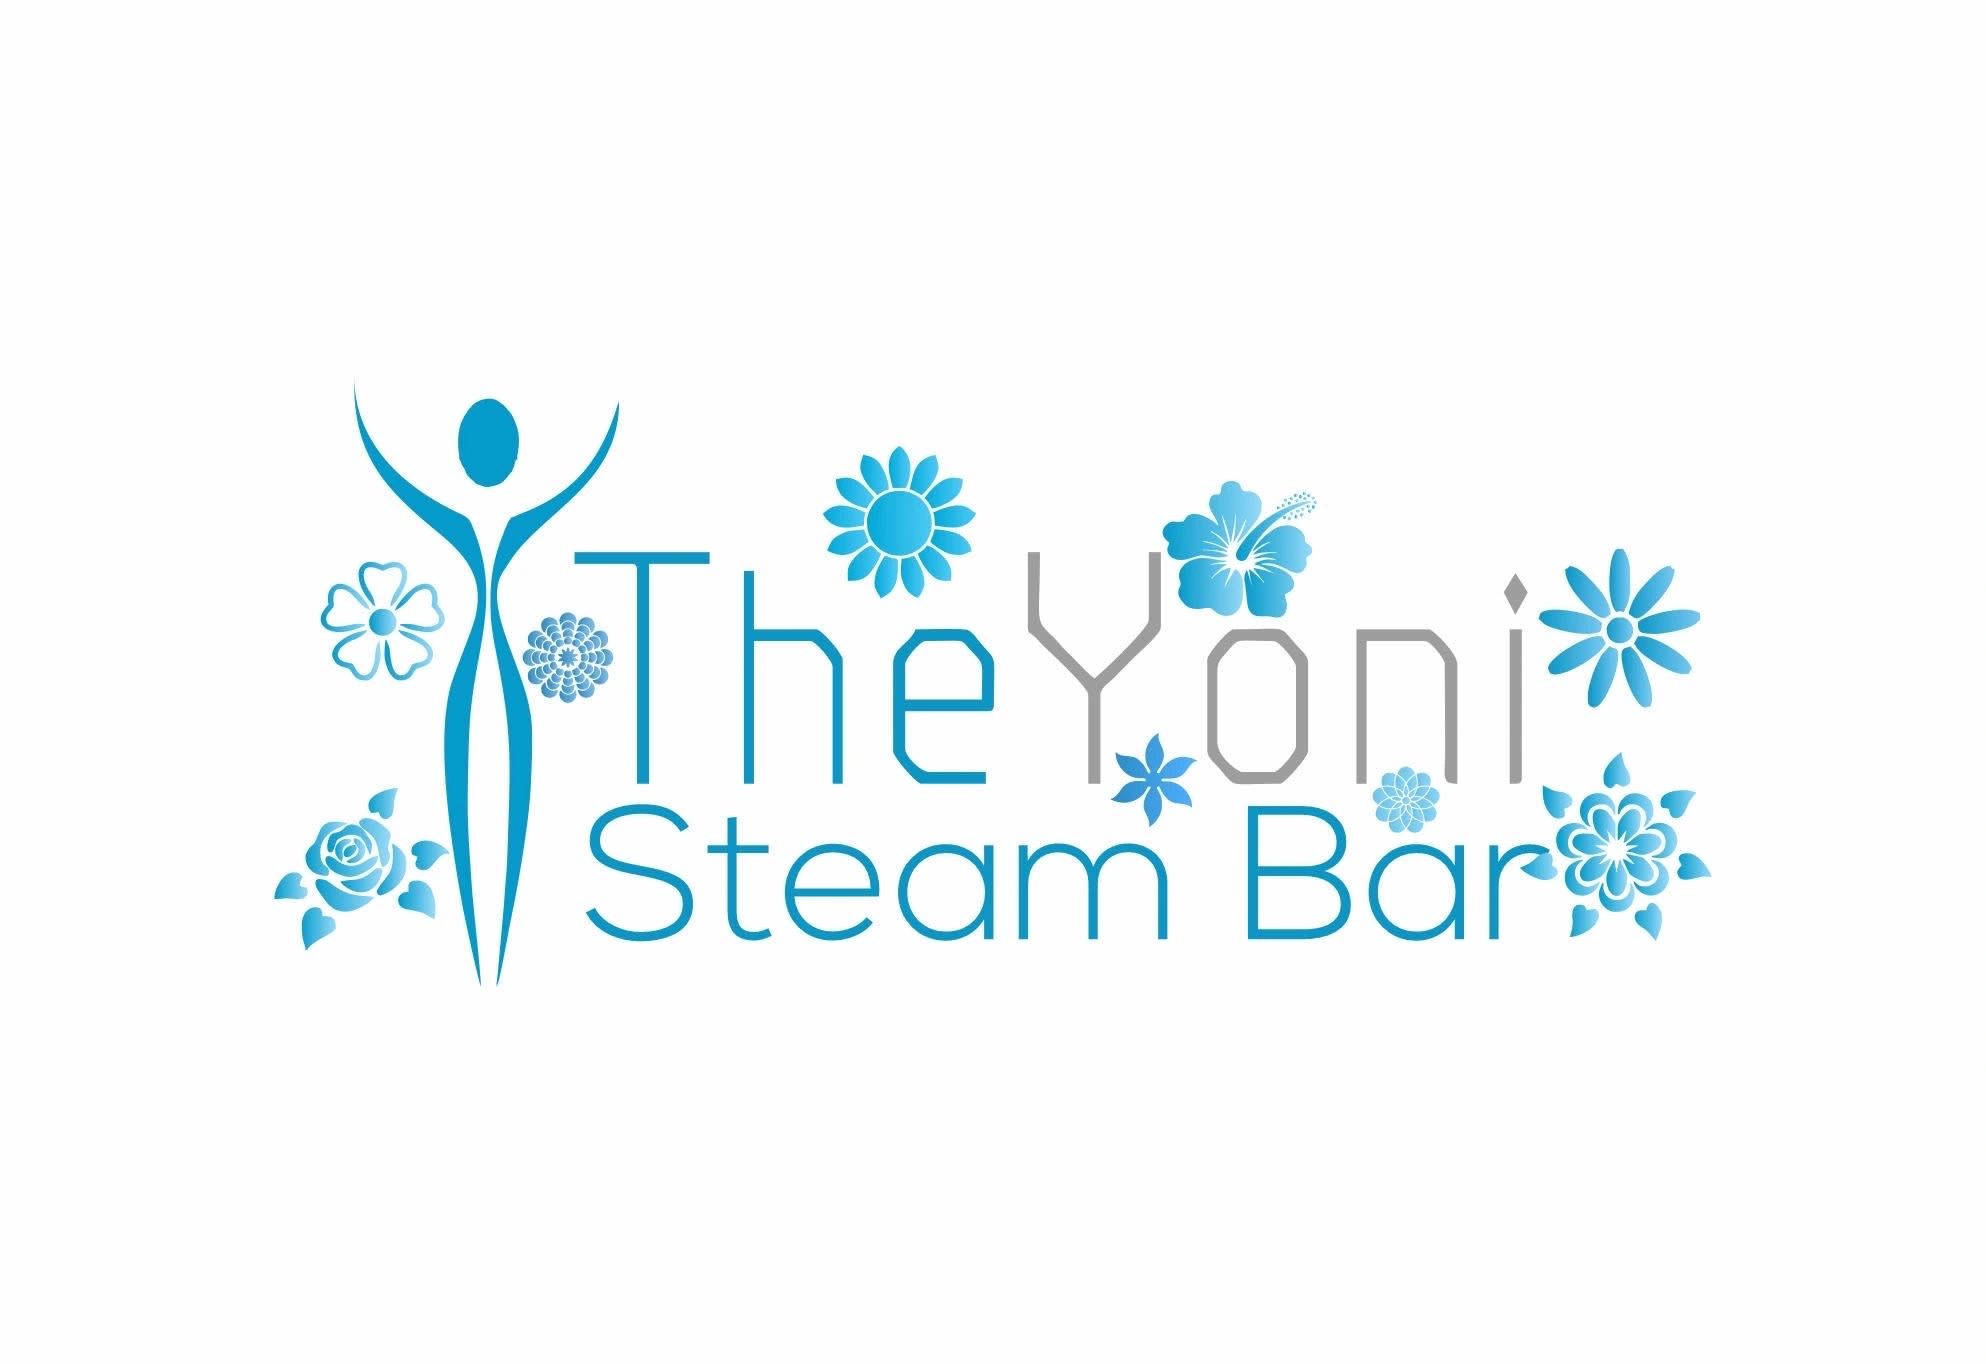 yoni steam logo